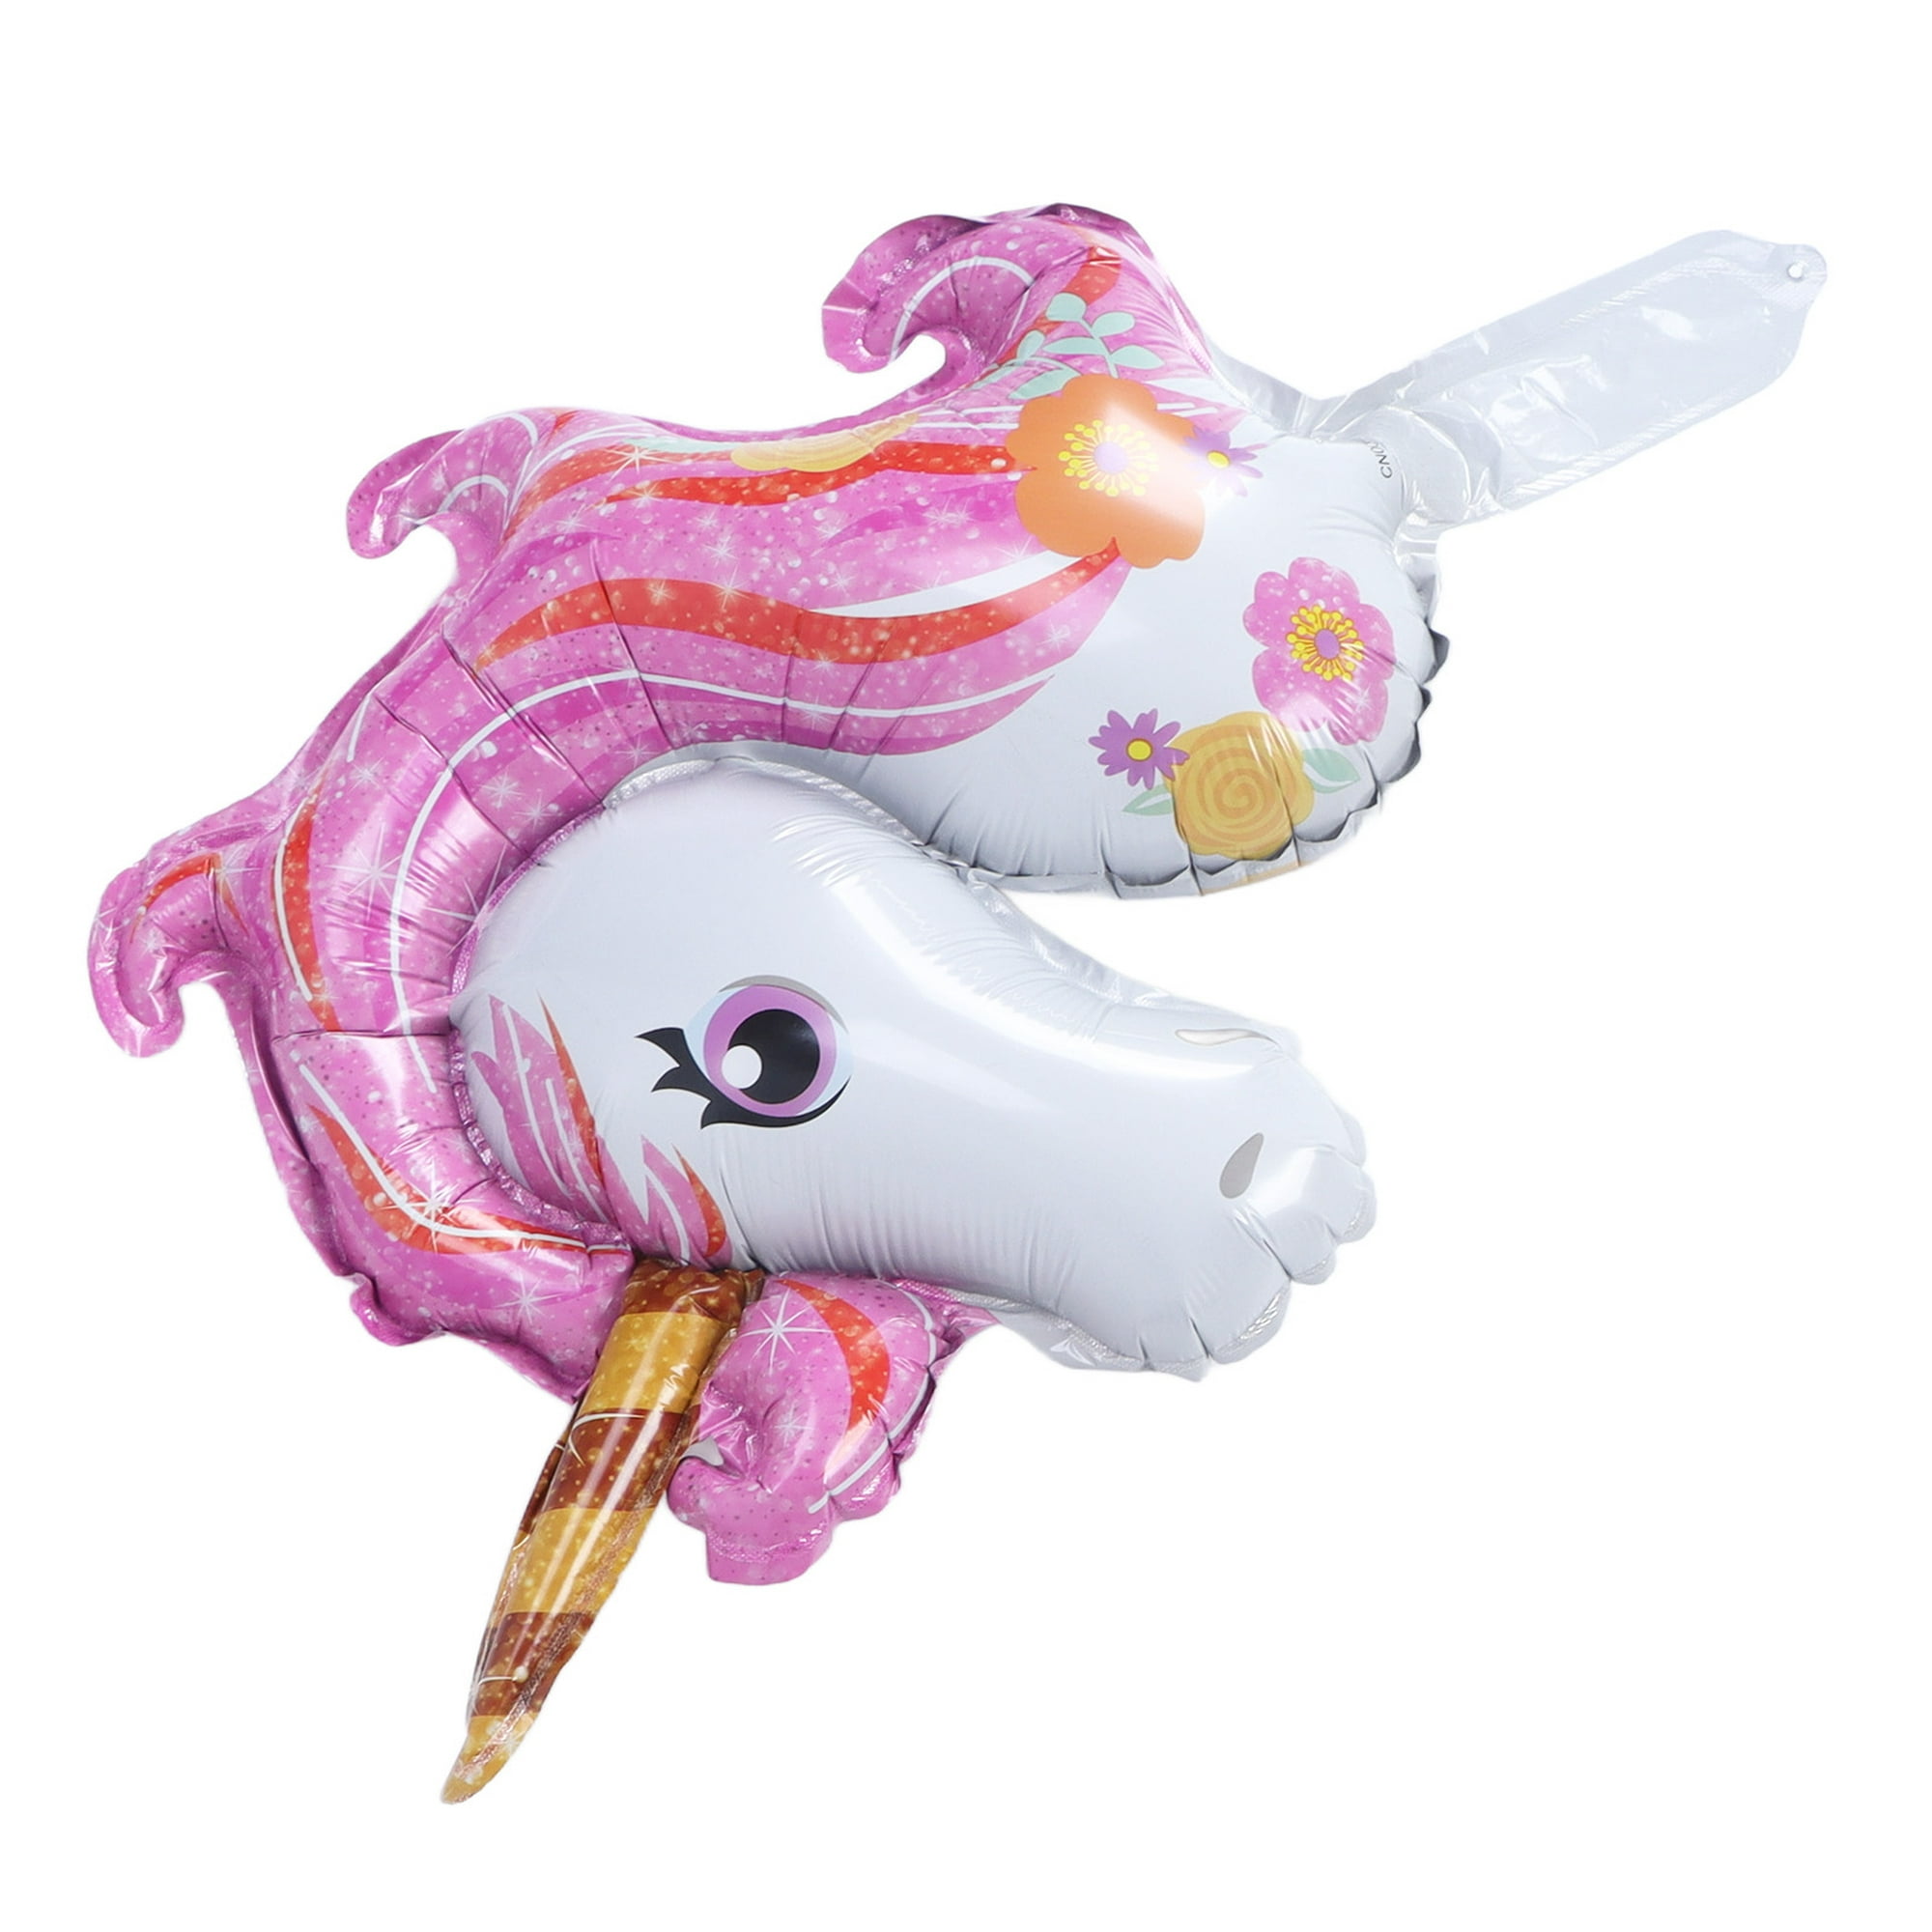 Cabeza unicornio linda con dulces y pasteles. Página de libros